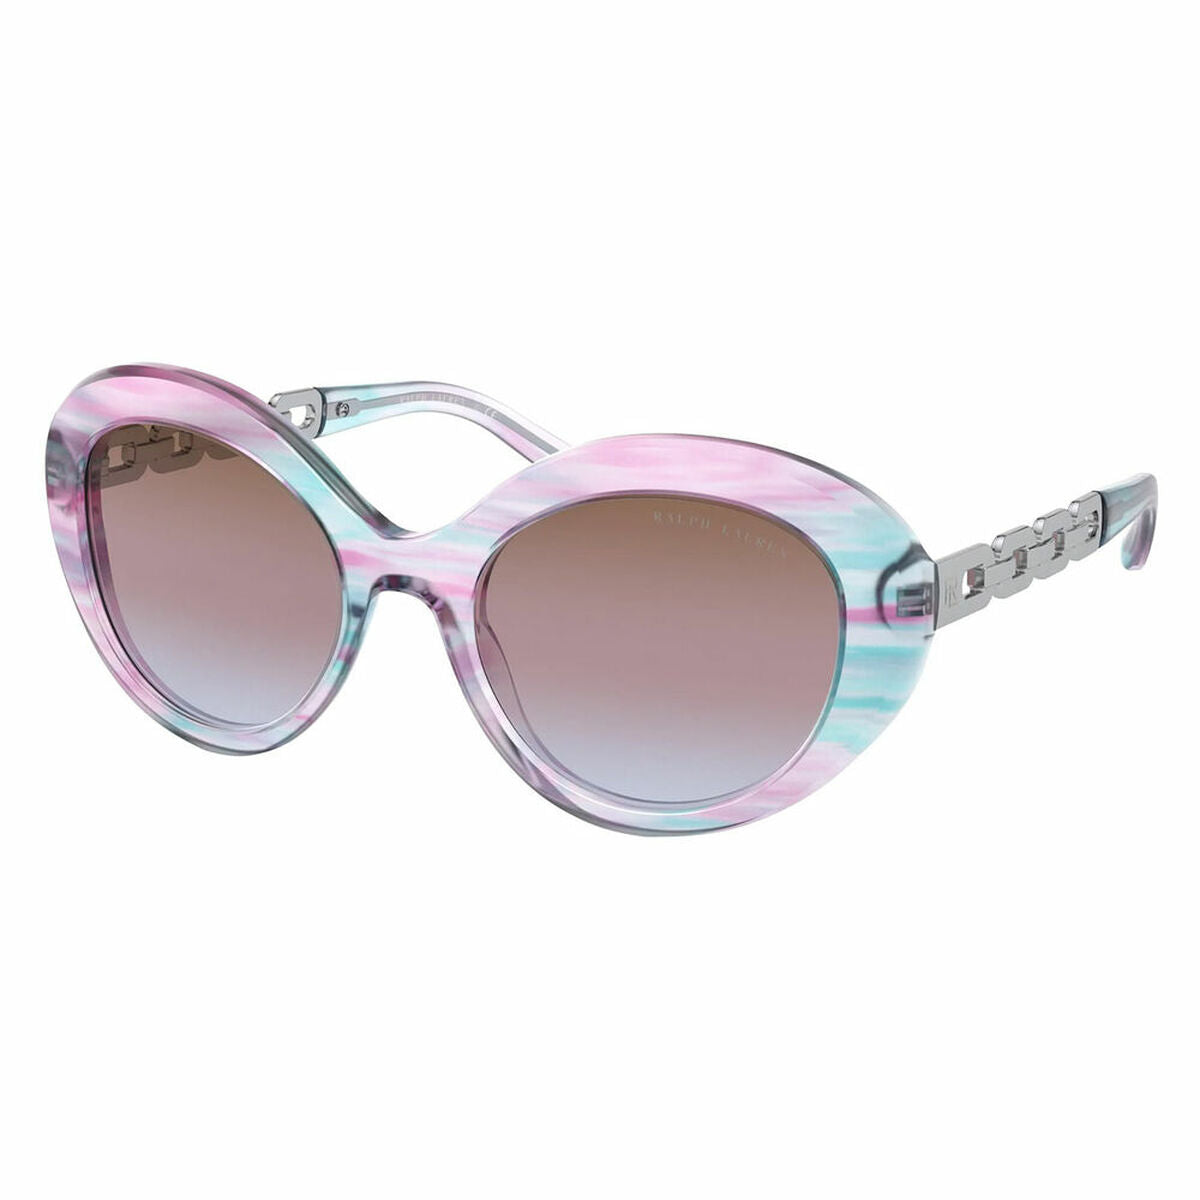 Ladies'Sunglasses Ralph Lauren